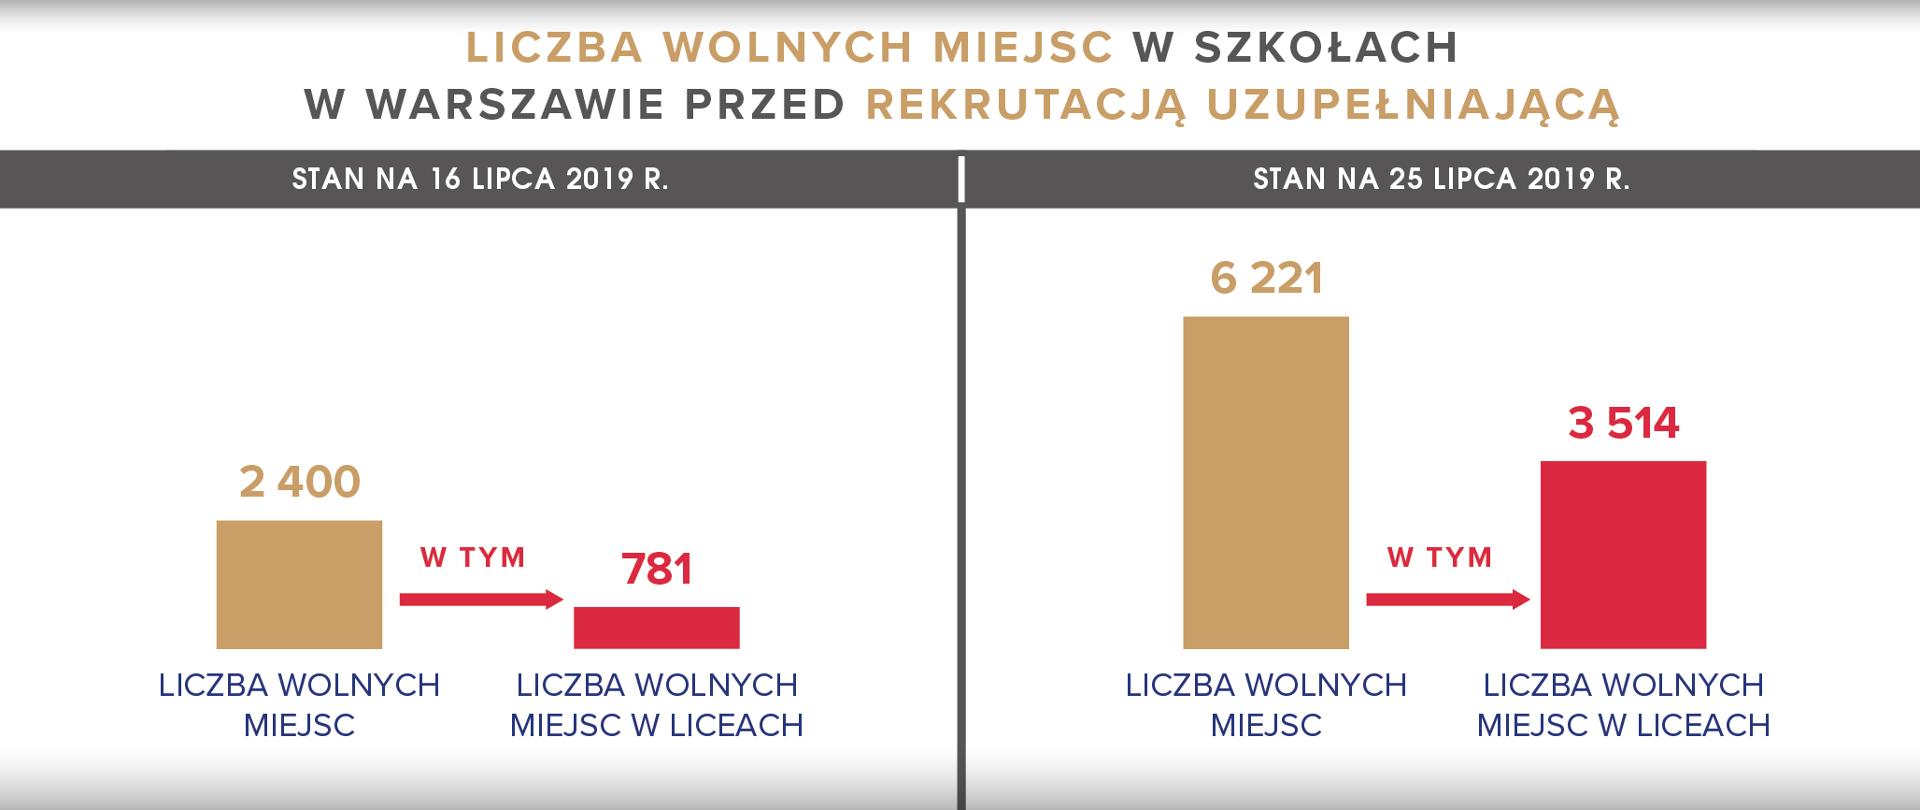 Liczba wolnych miejsc w szkołach w Warszawie przed rekrutacją uzupełniającą